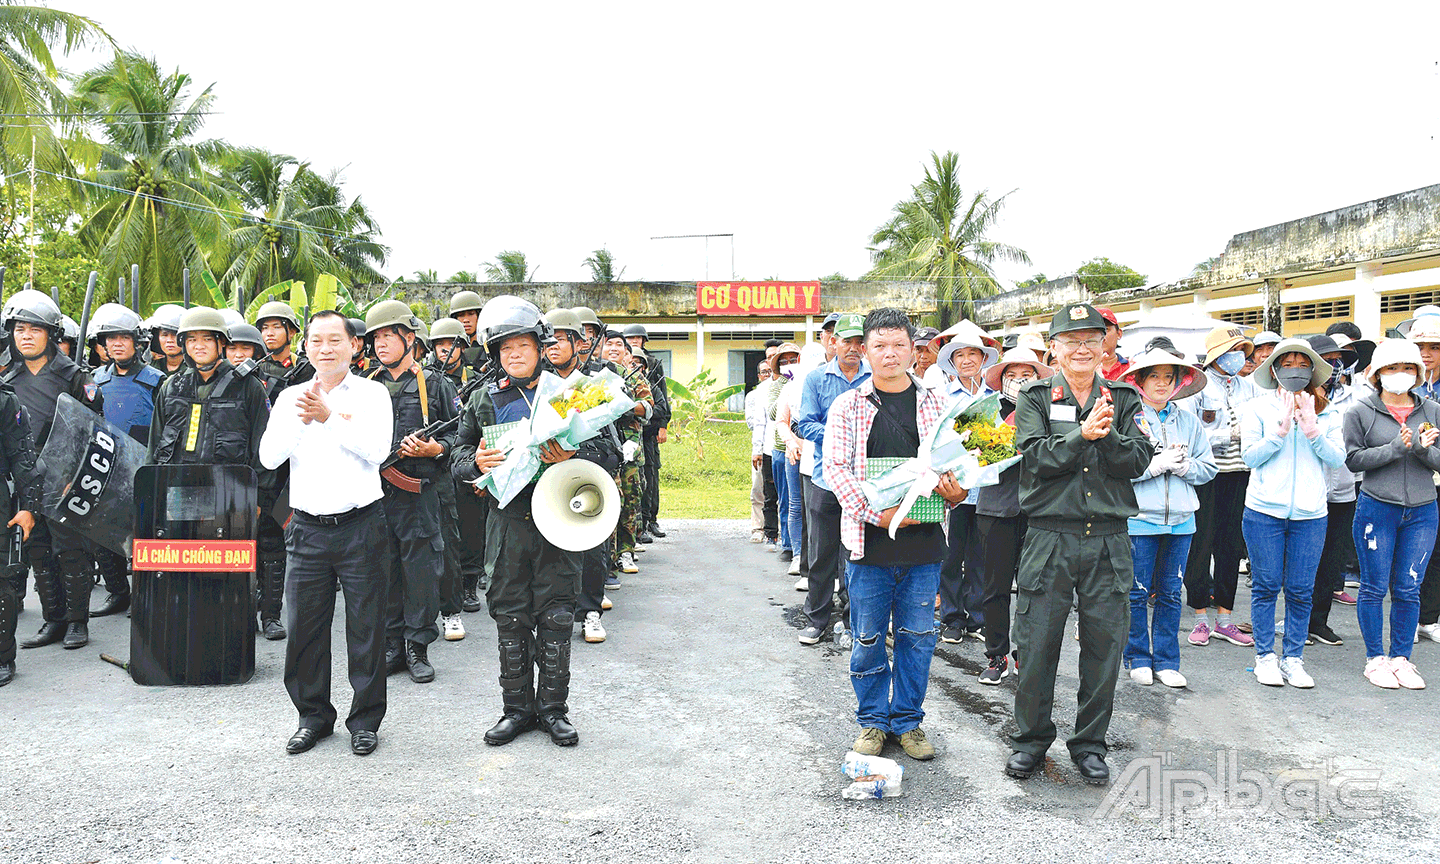  Đồng chí Nguyễn Văn Vĩnh, Chủ tịch UBND tỉnh và đồng chí Huỳnh Văn Bé Hai tặng hoa và quà động viên cho lực lượng  Công an hoàn thành nhiệm vụ thực binh.